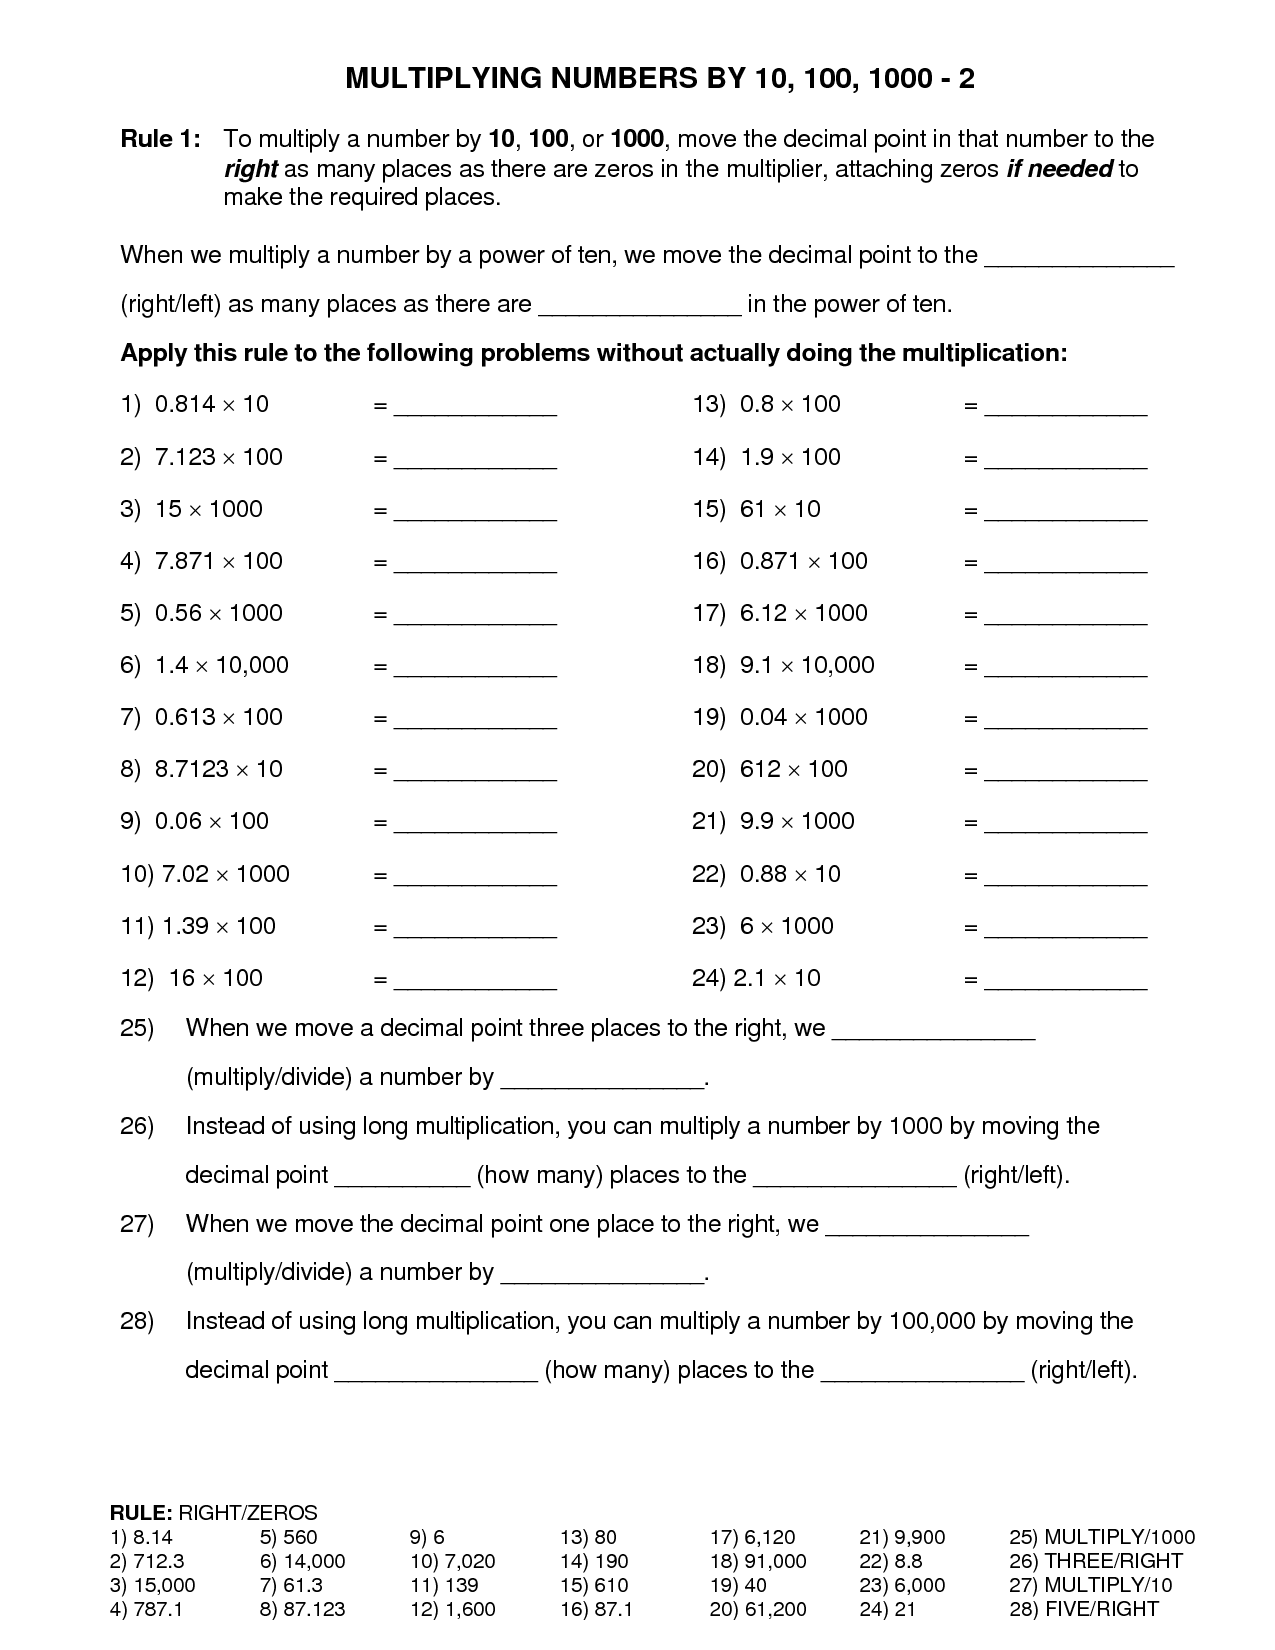 Write Numbers In Standard Form Worksheet